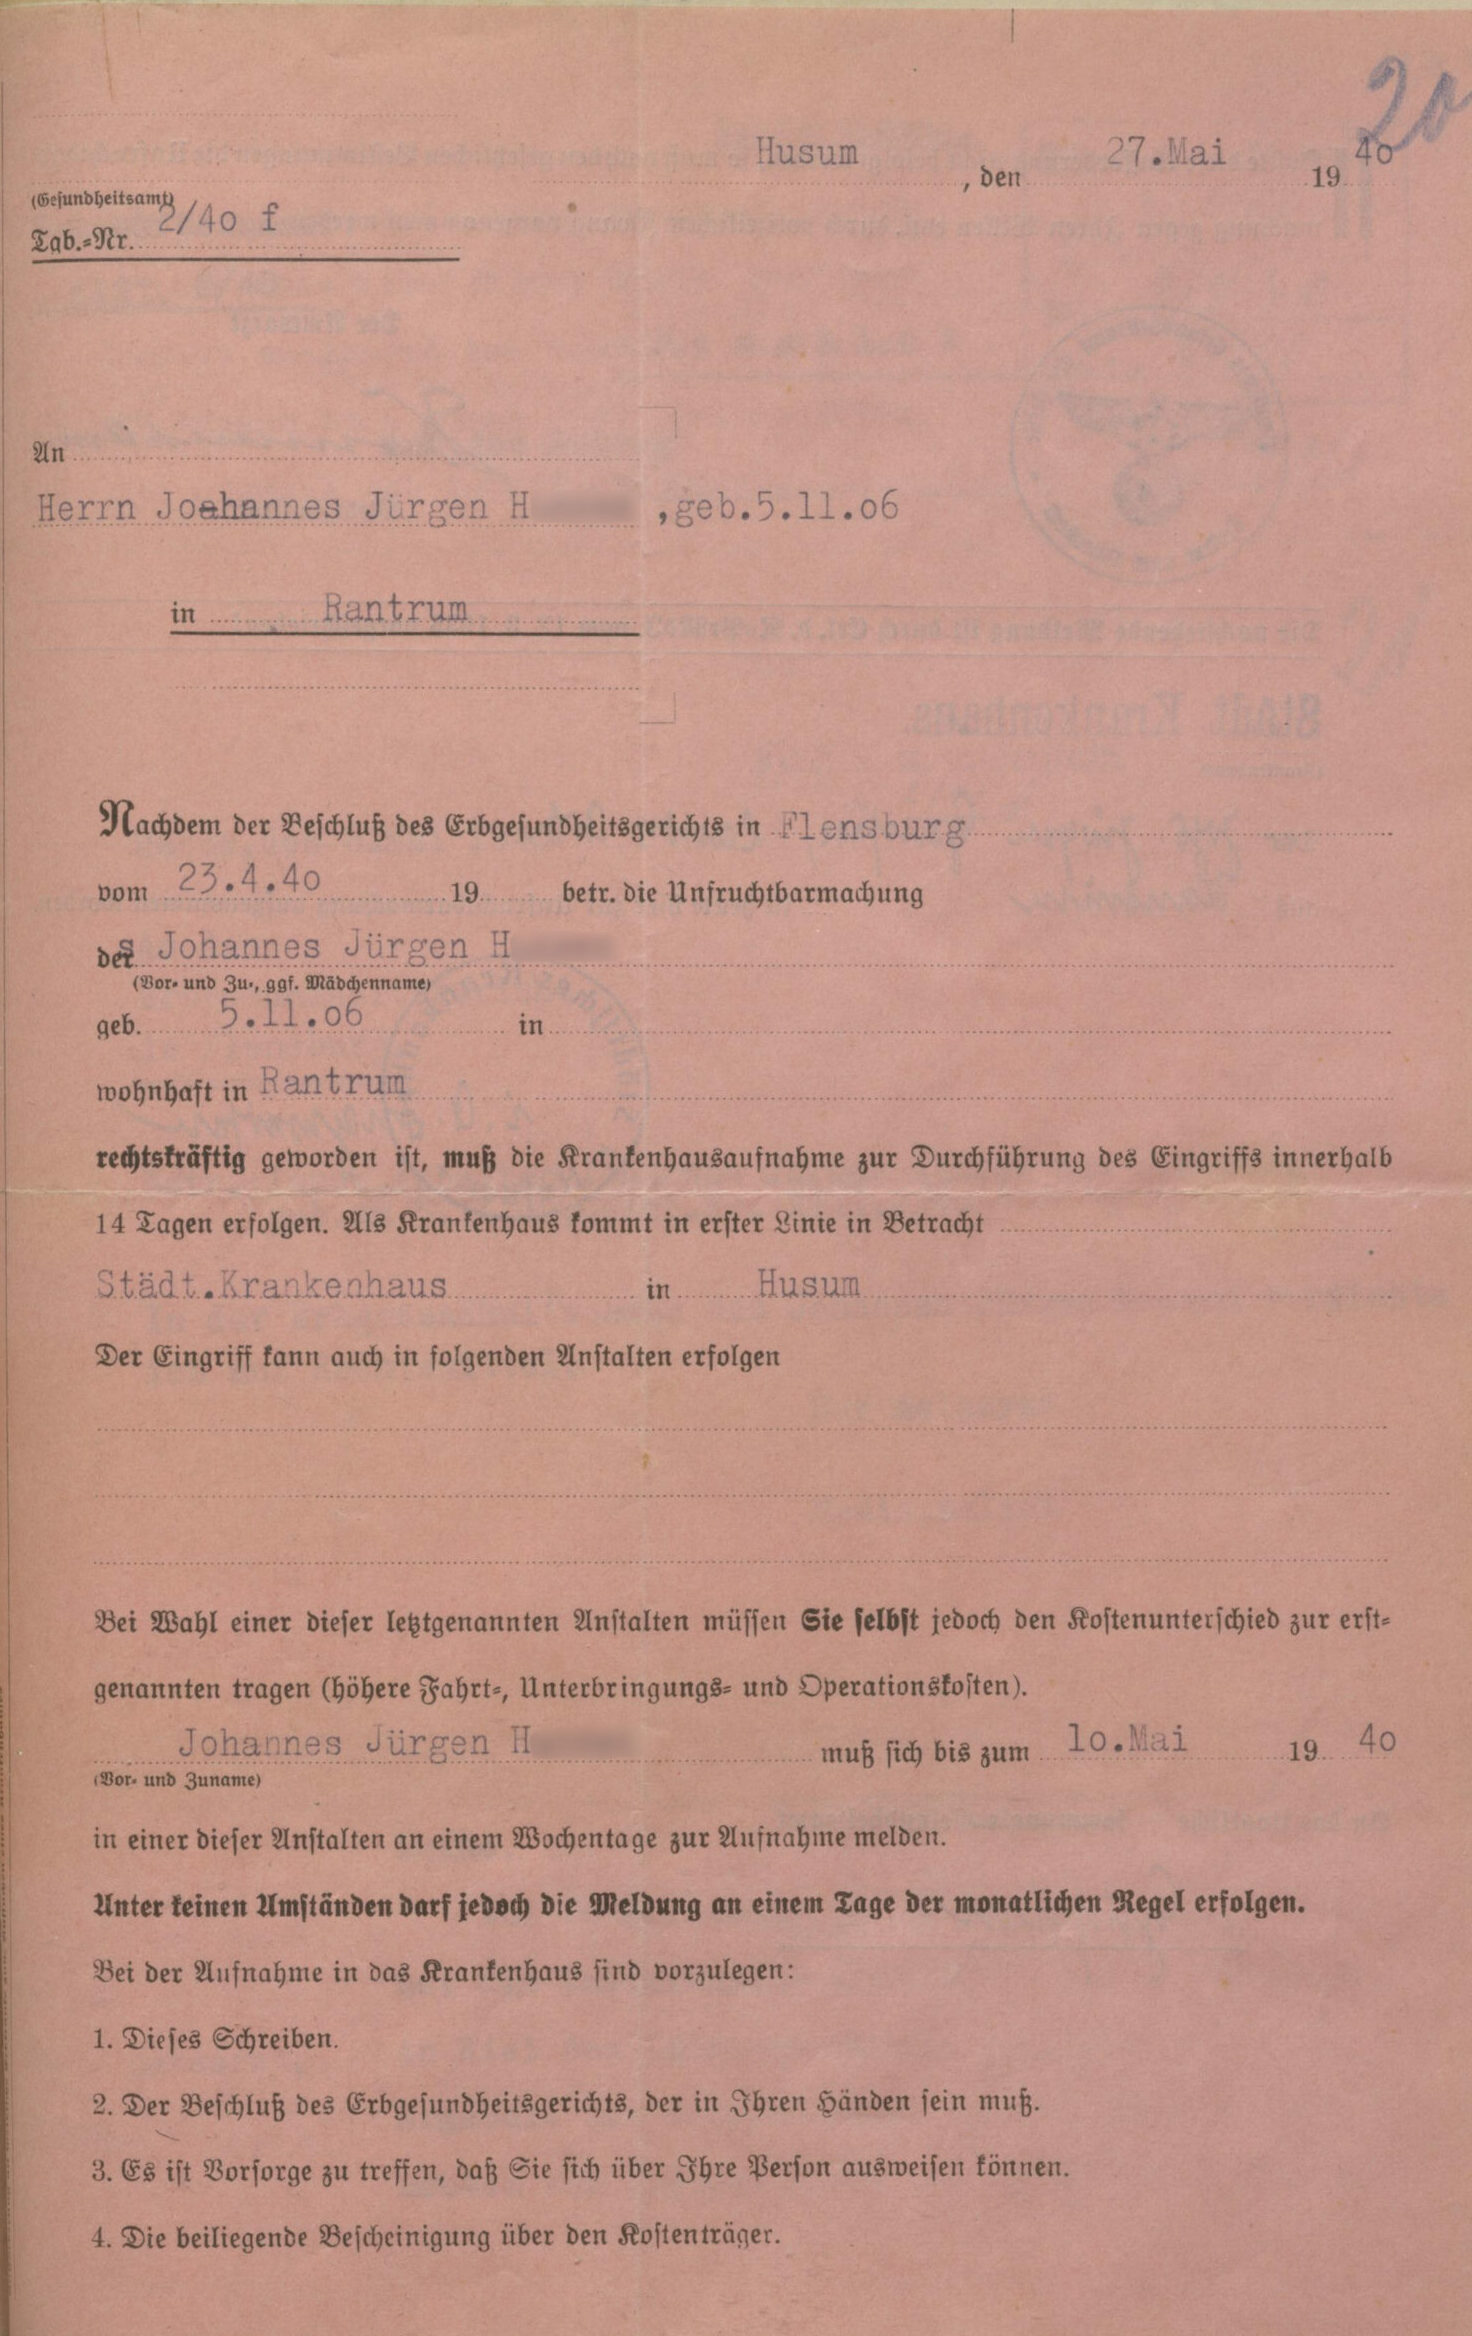 Am 27. Mai 1940 wurde Johannes H. von Amtsarzt Hommelsheim aufgefordert, sich bis binnen 14 Tagen im Städtischen Krankenhaus in Husum zur Unfruchtbarmachung aufnehmen zu lassen. Als Ende der Frist wurde der 10. Mai 1940 eingetragen, der zum Zeitpunkt des Schreibens bereits verstrichen war. Auf der Rückseite des Formulars wurde angekündigt: „Sollte diese Aufforderung nicht befolgt werden, so muß nach den gesetzlichen Bestimmungen die Unfruchtbarmachung gegen Ihren Willen evtl. durch polizeilichen Zwang vorgenommen werden.“ [Kreisarchiv Nordfriesland]